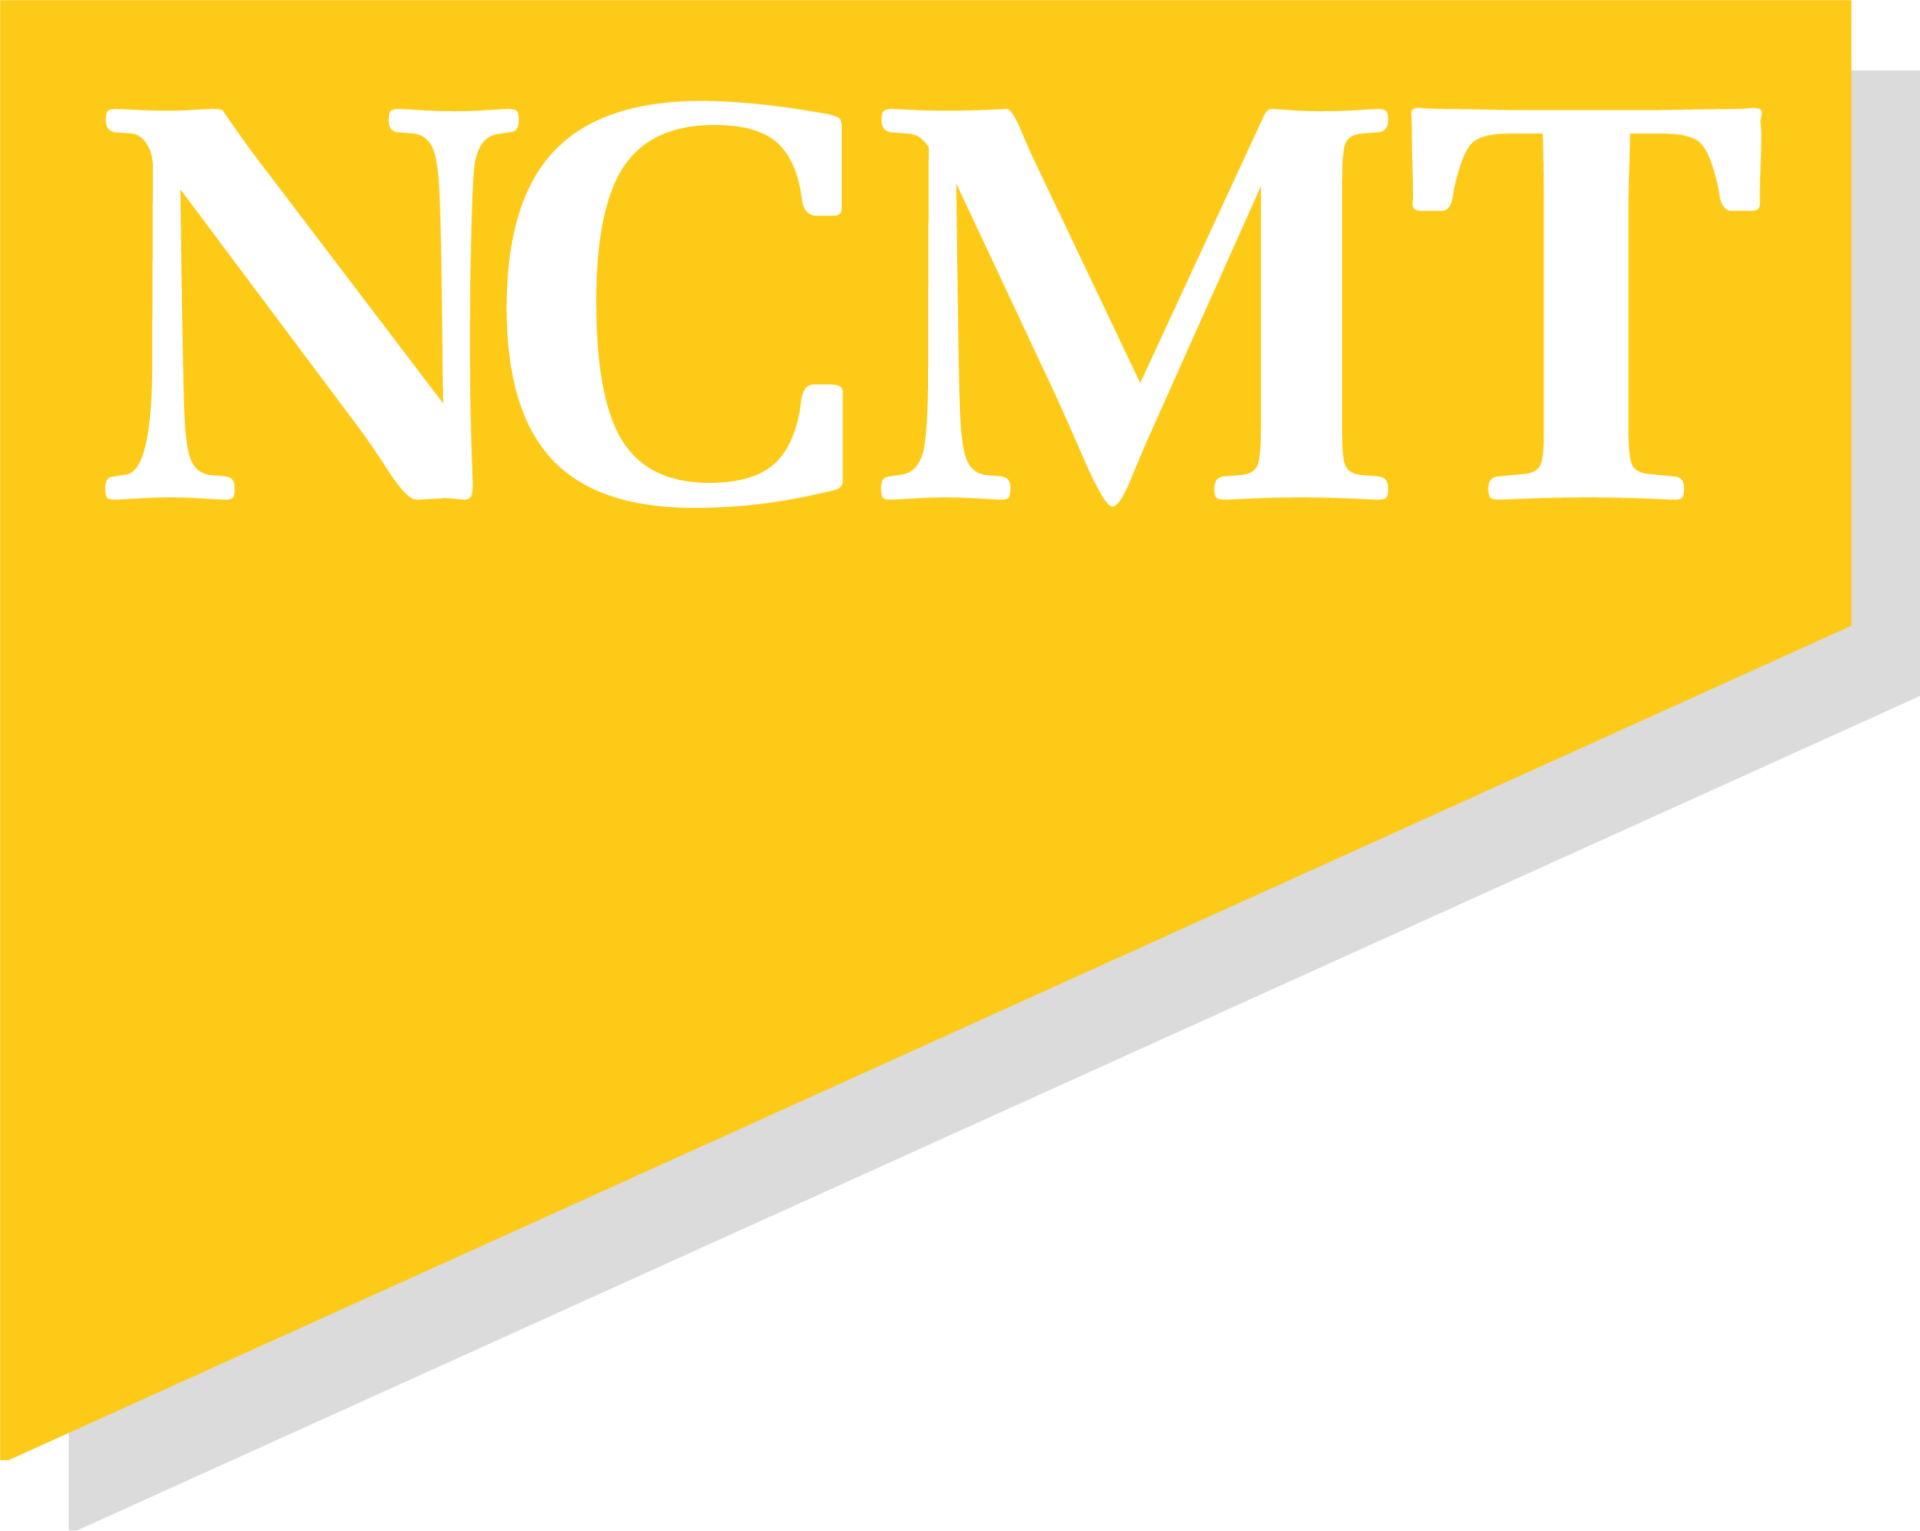 (c) Ncmt.co.uk